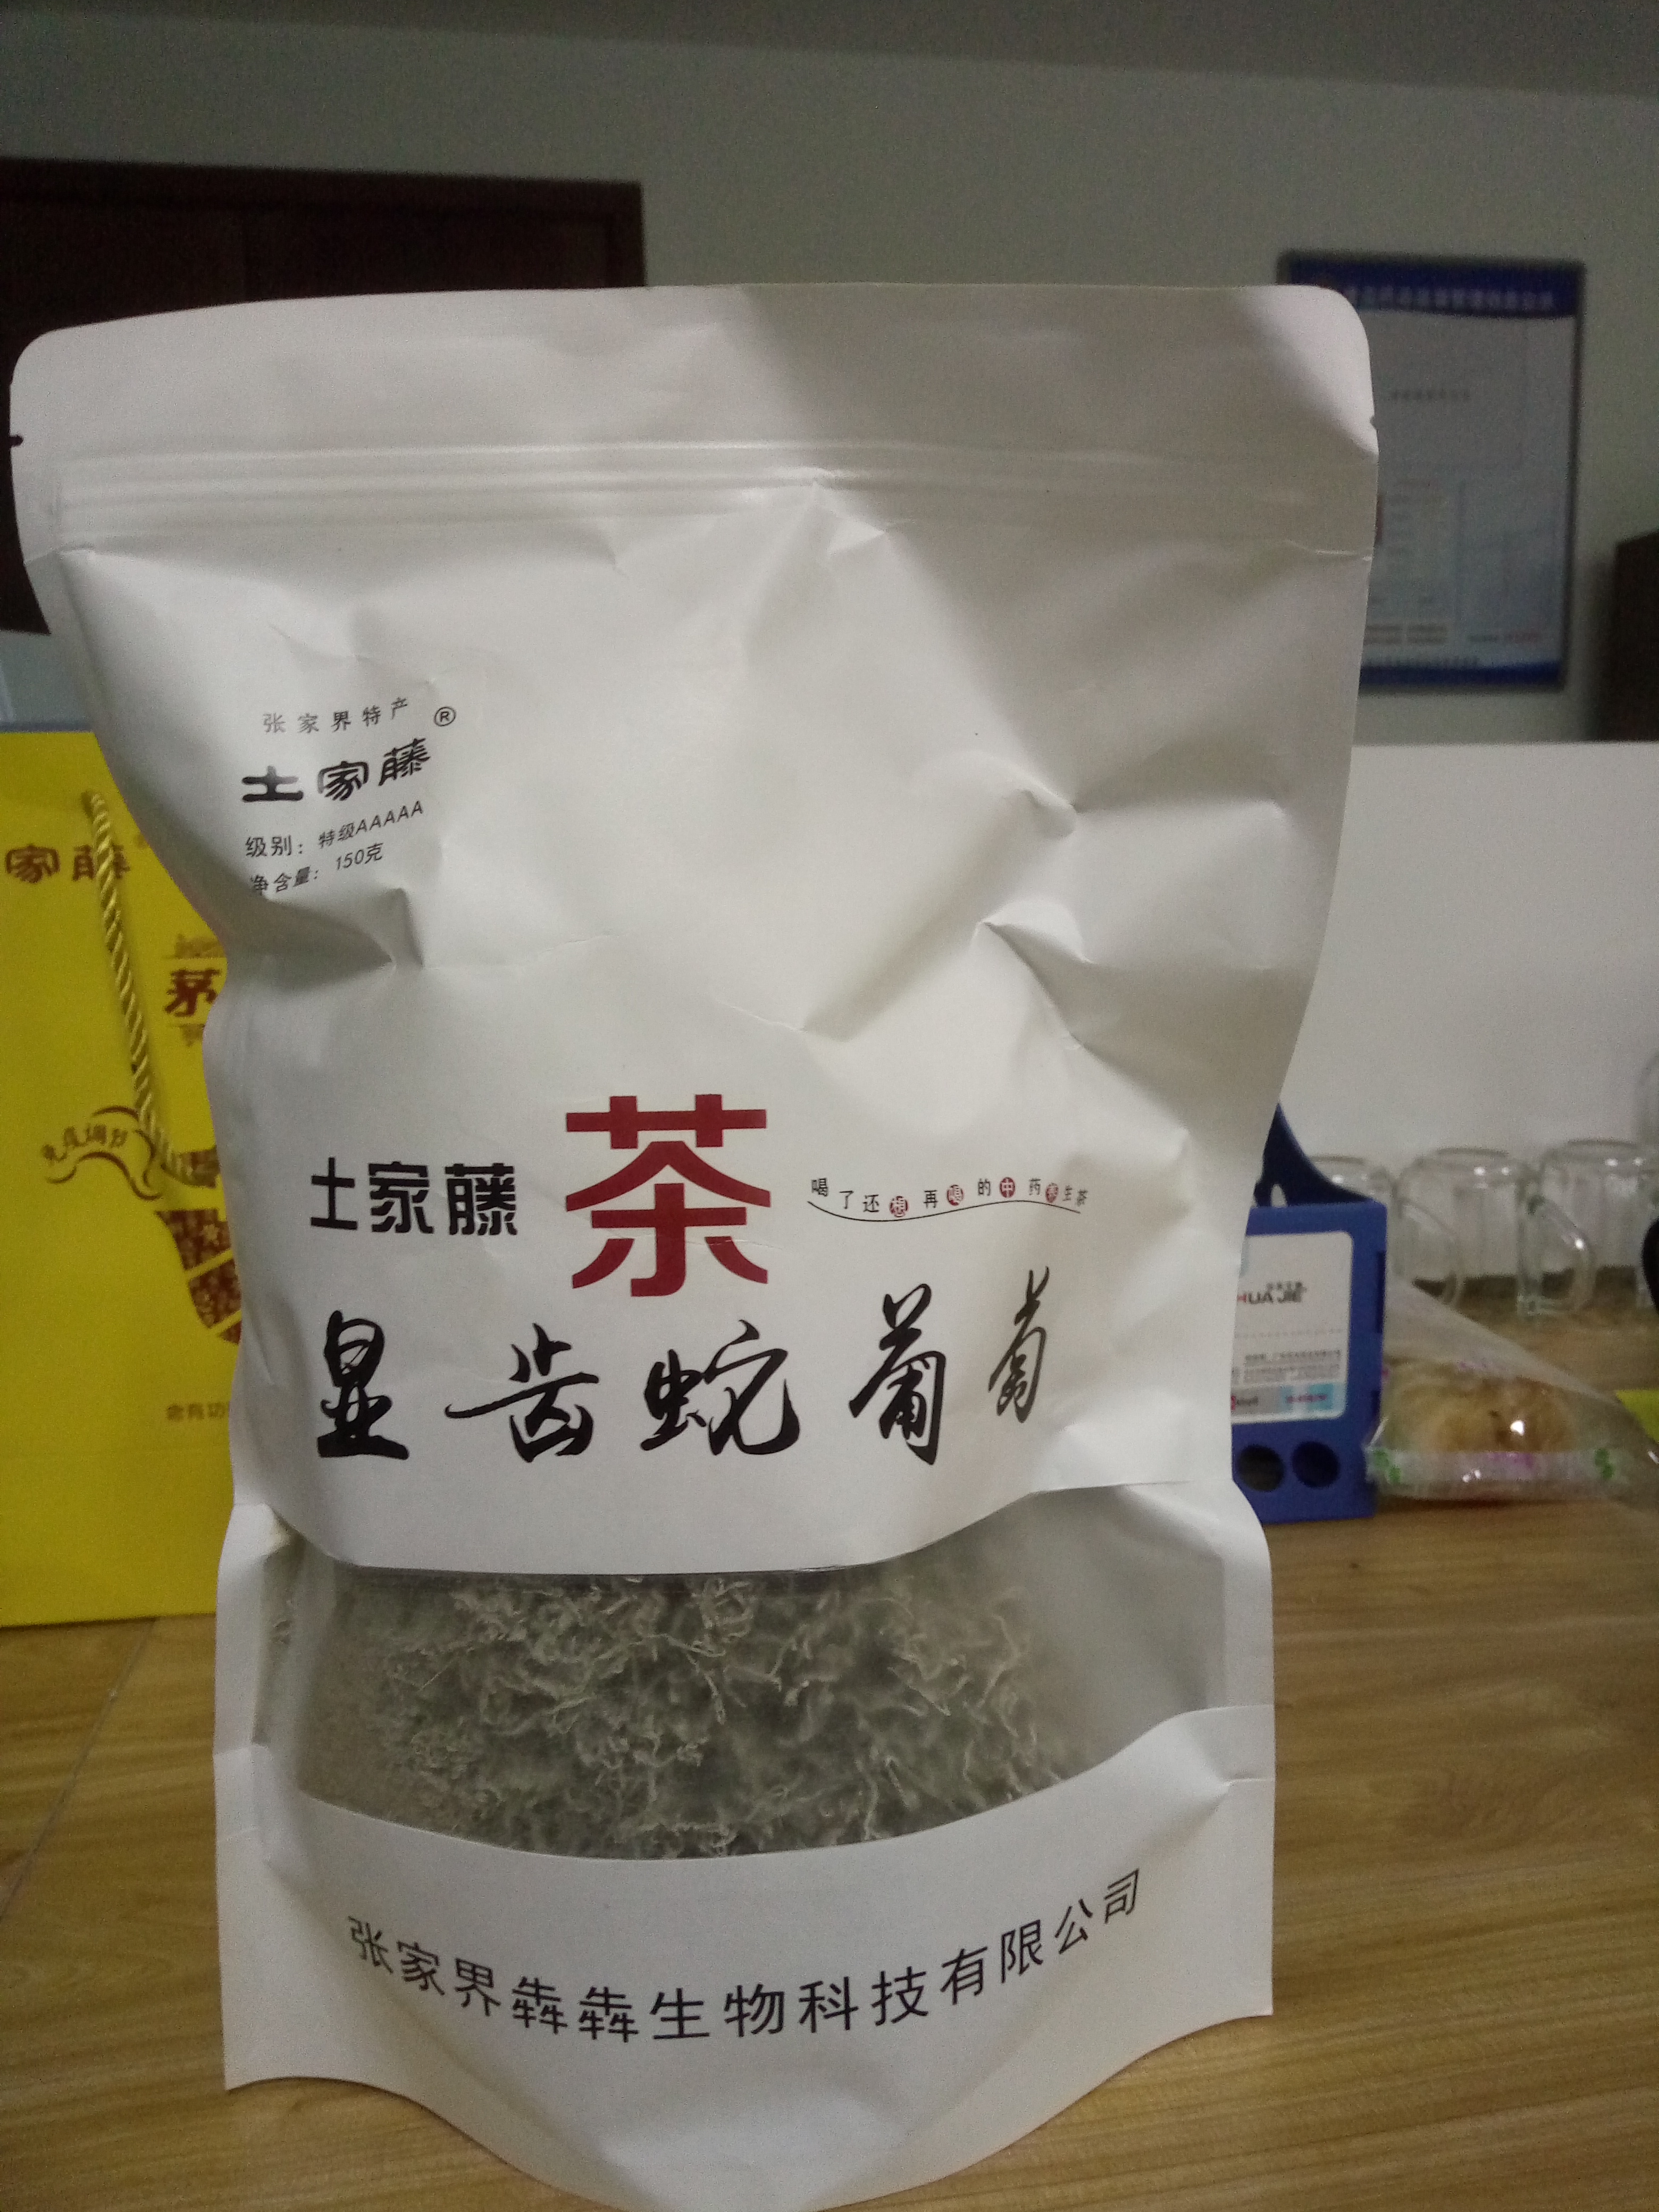 茅岩莓茶龙须茶神仙茶长寿茶